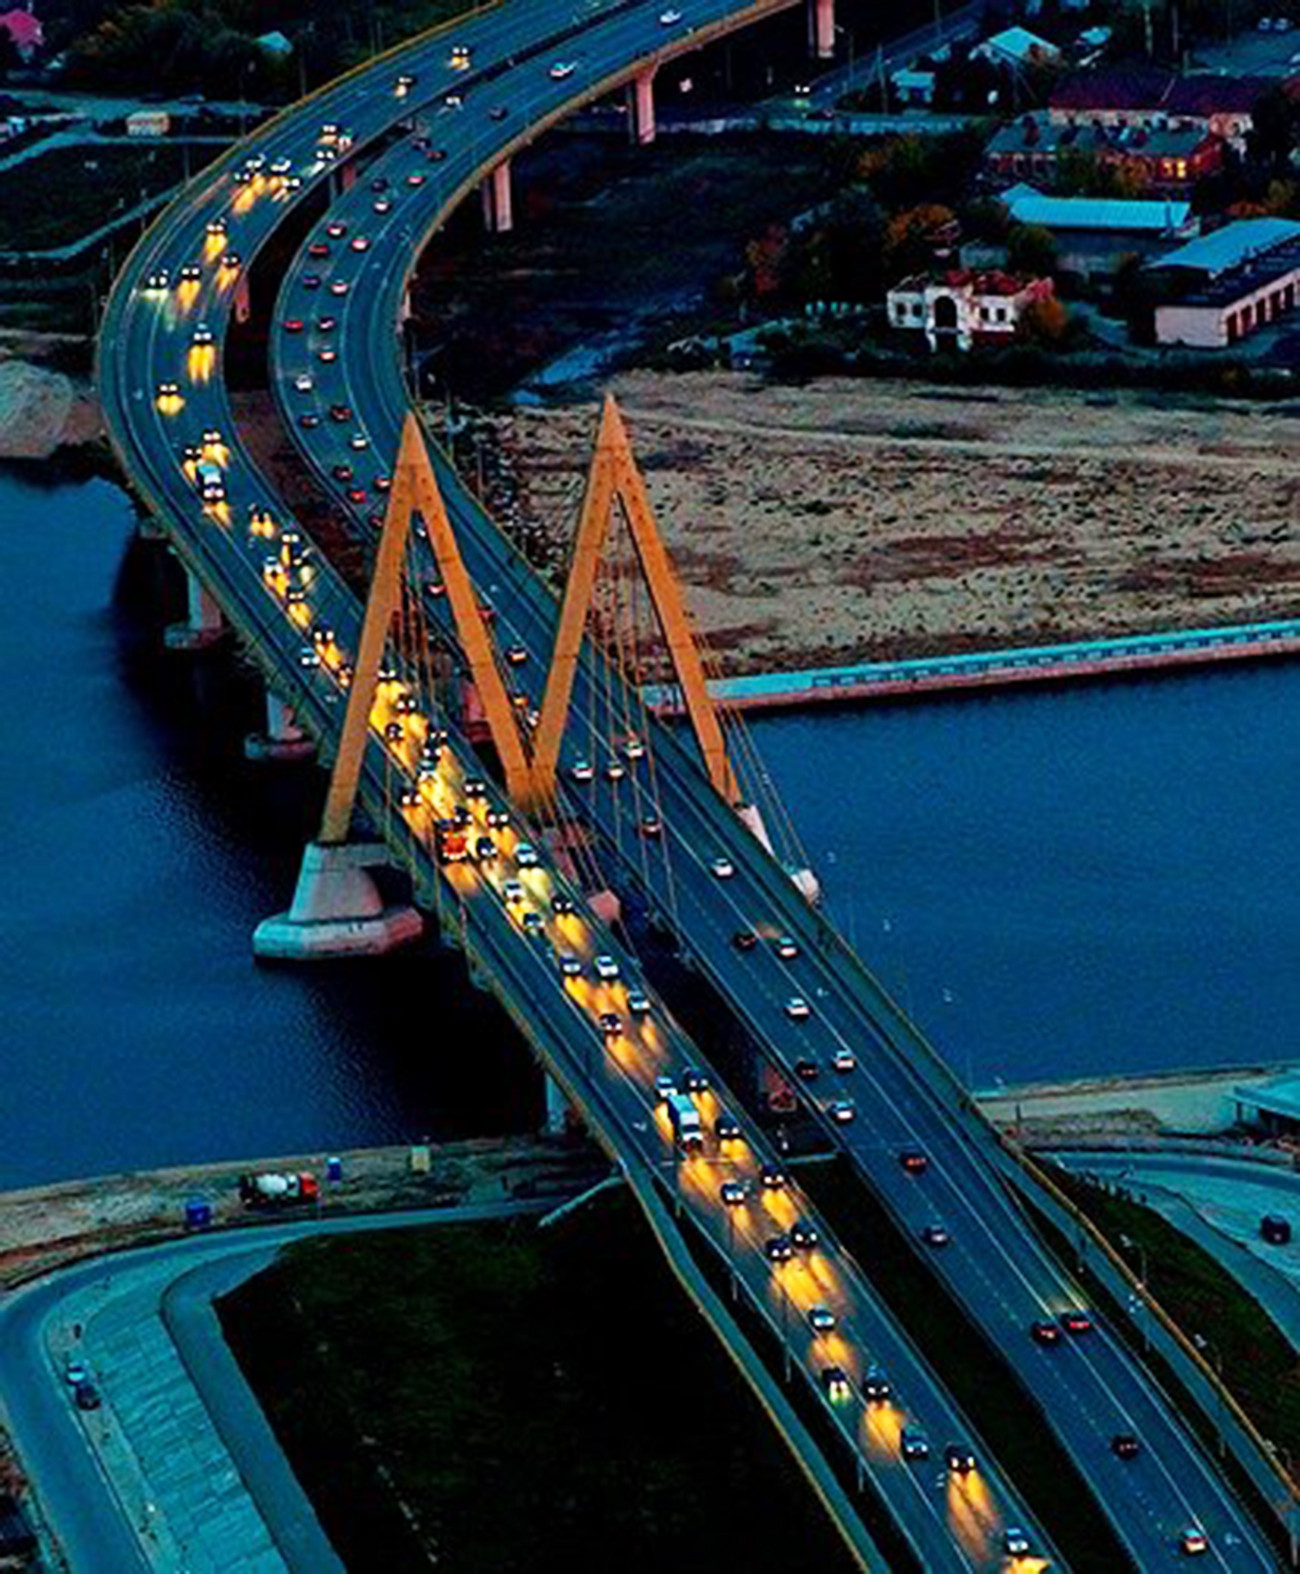 Cầu chữ M – cầu “Thiên niên kỷ” này được xây vào năm 2005 nhân kỷ niệm 1.000 năm thành phố Kazan. Cây cầu này về đêm cũng rất lung linh.